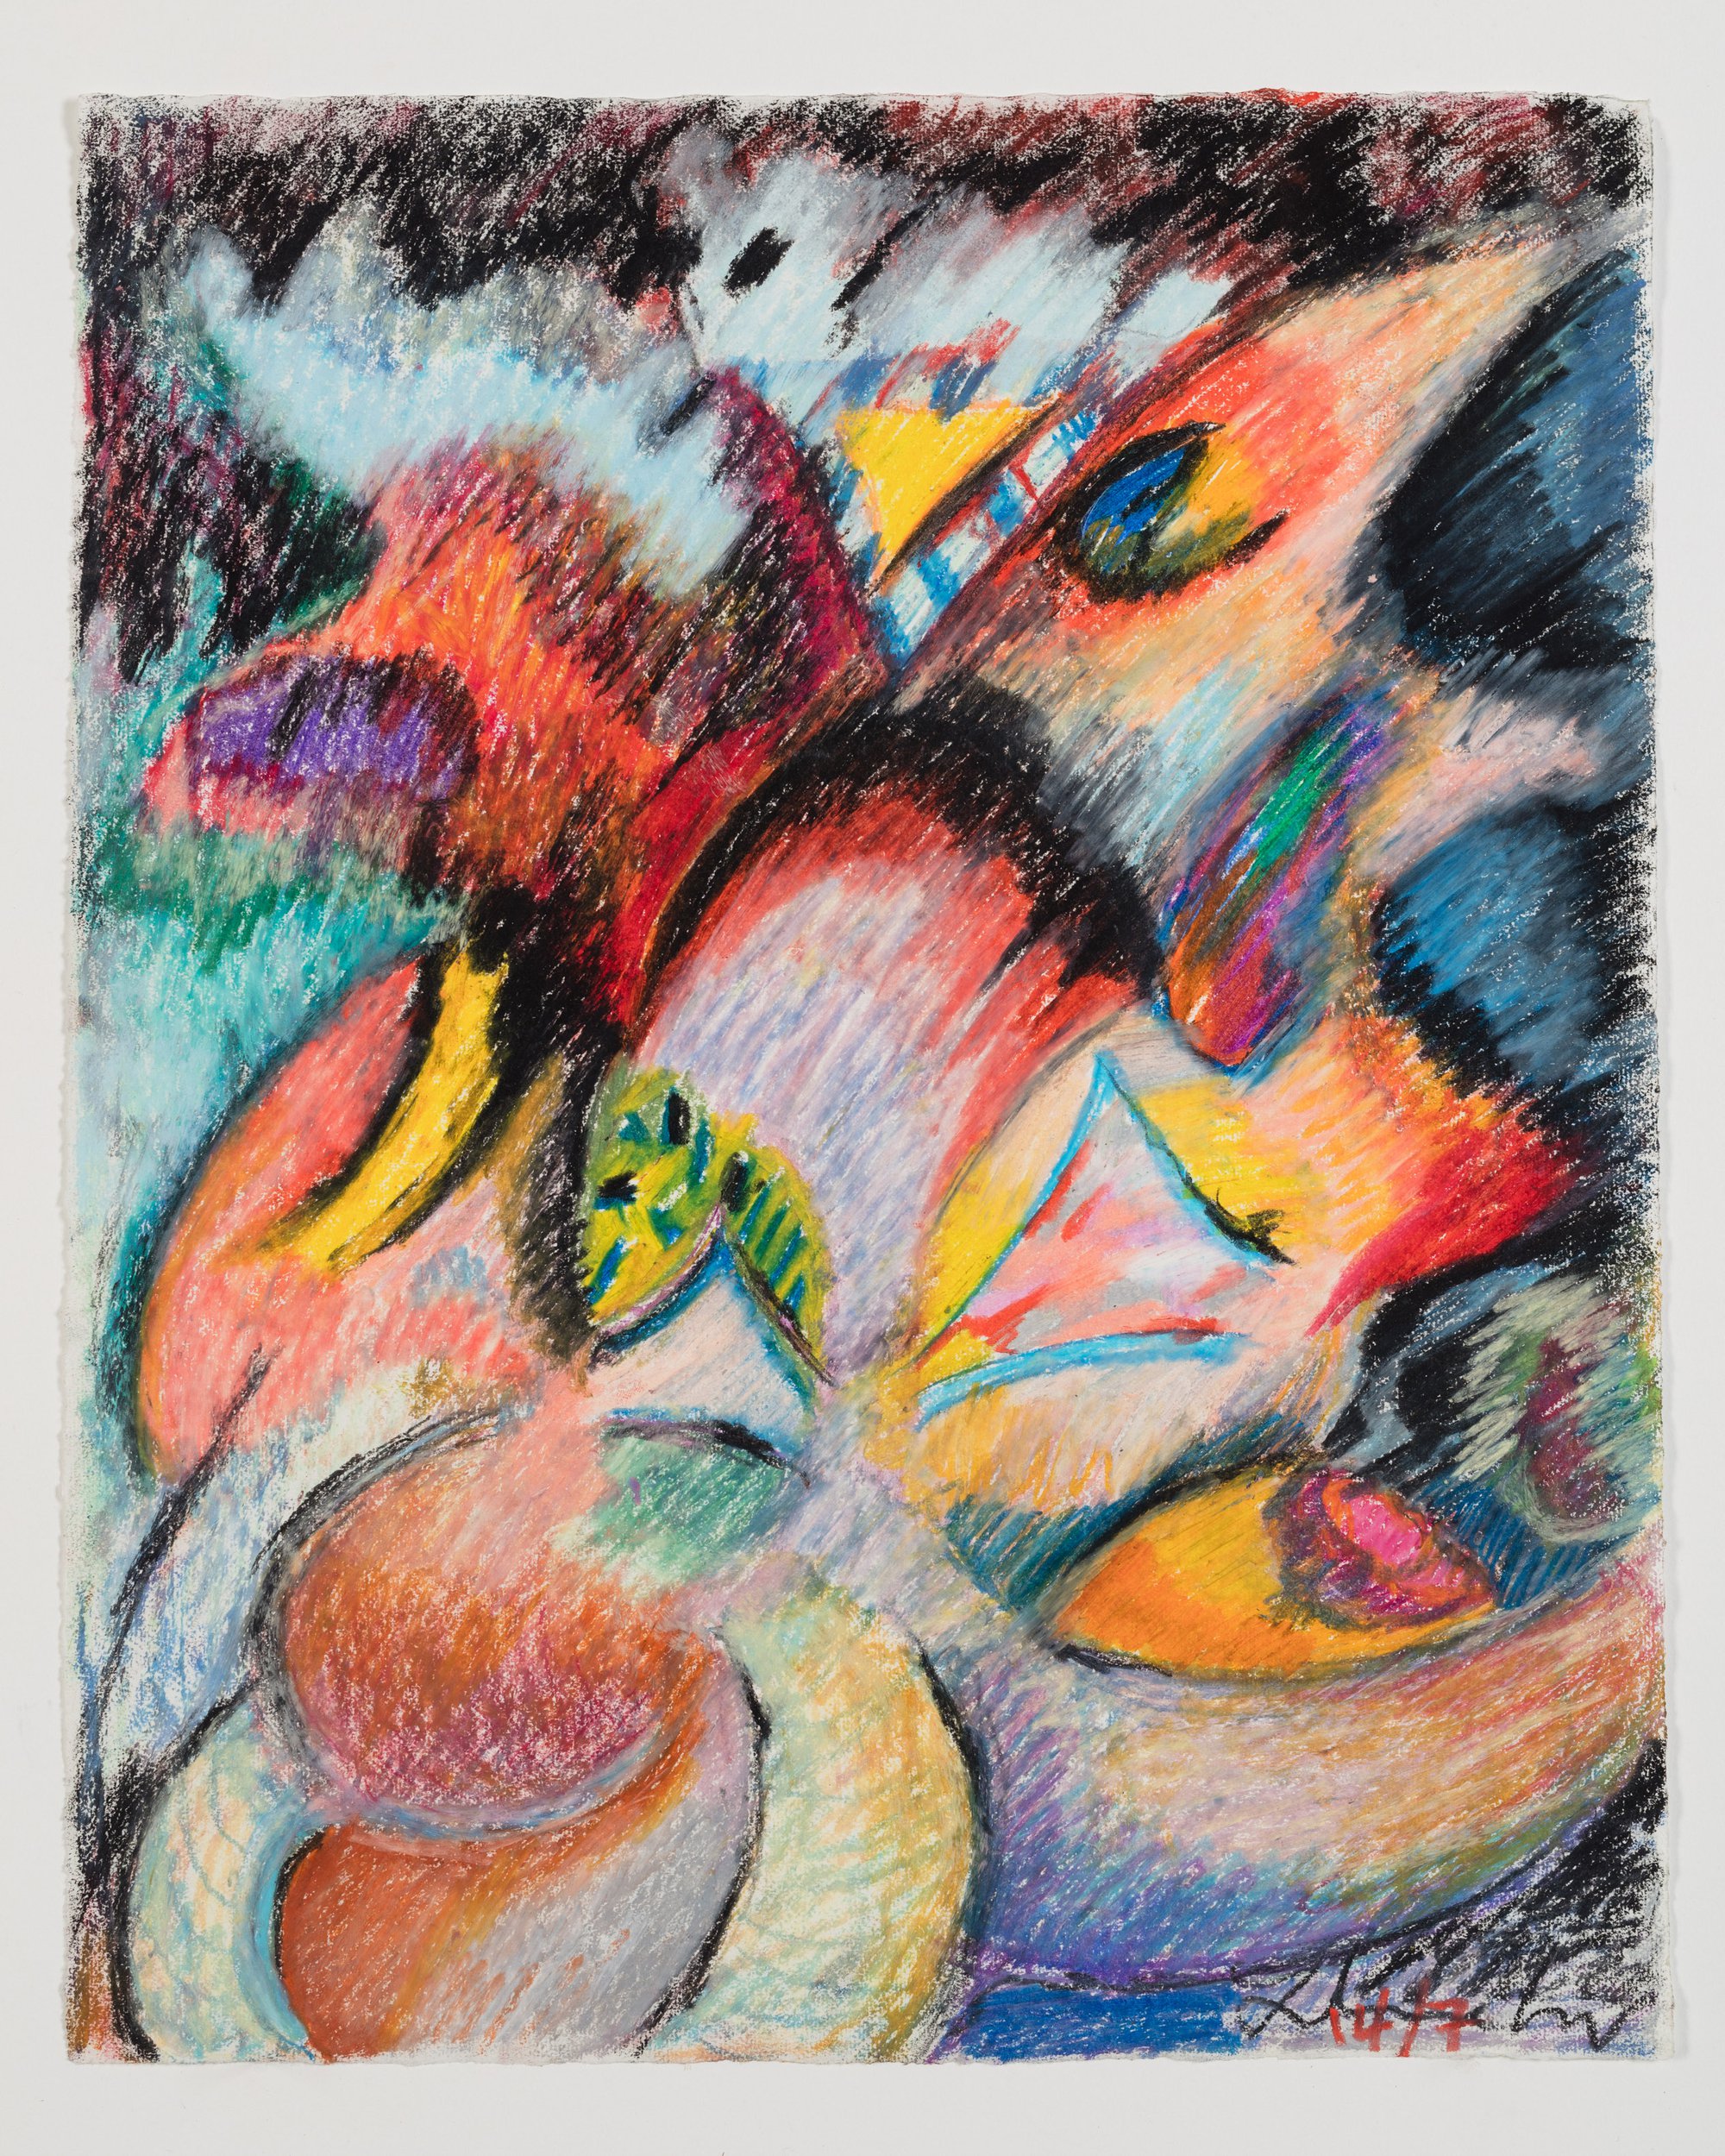 Liliane Lijn, Firelight, oil pastel on paper, 52.5 x 43 cm framed (20 5/8 x 16 7/8 in framed), 1992